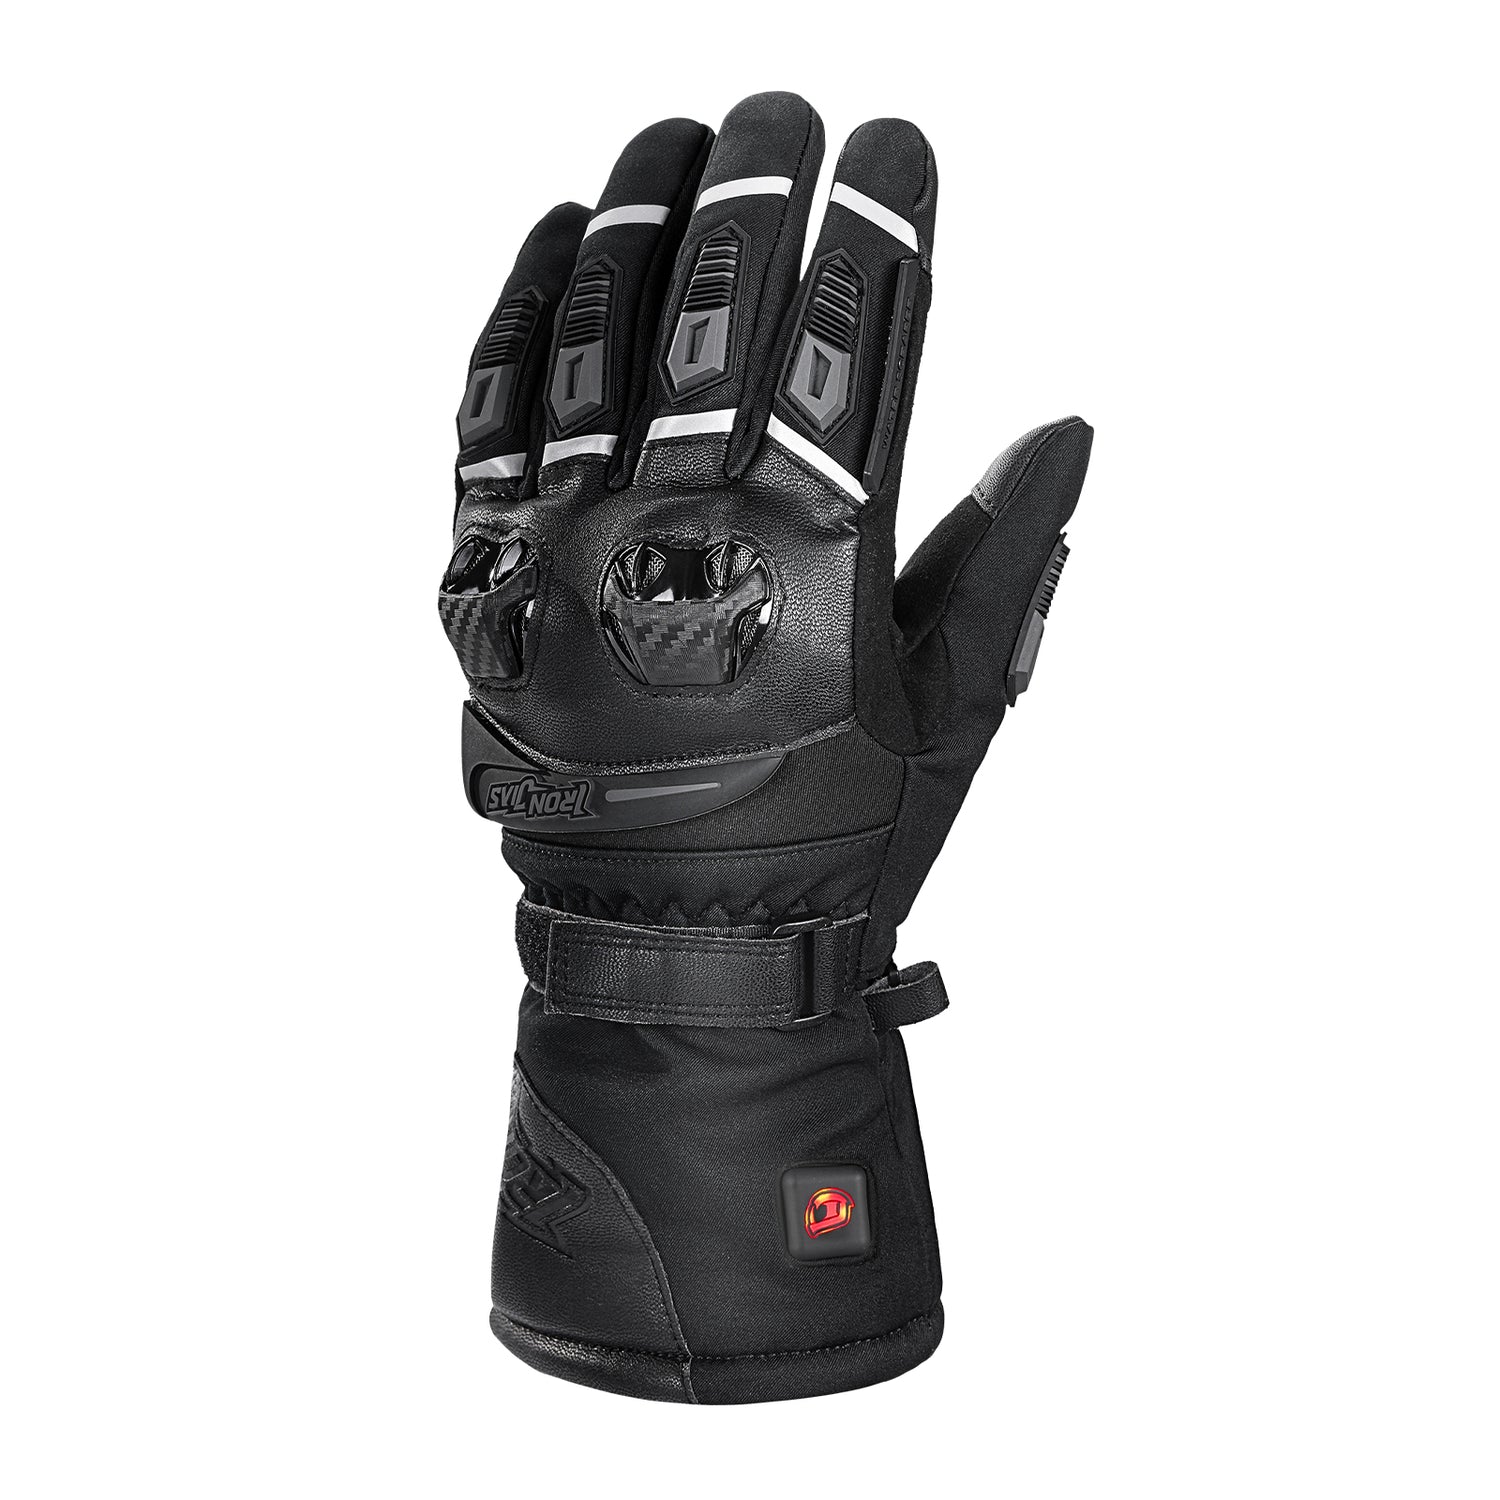 Black Gauntlet Heated Motorcycle Gloves